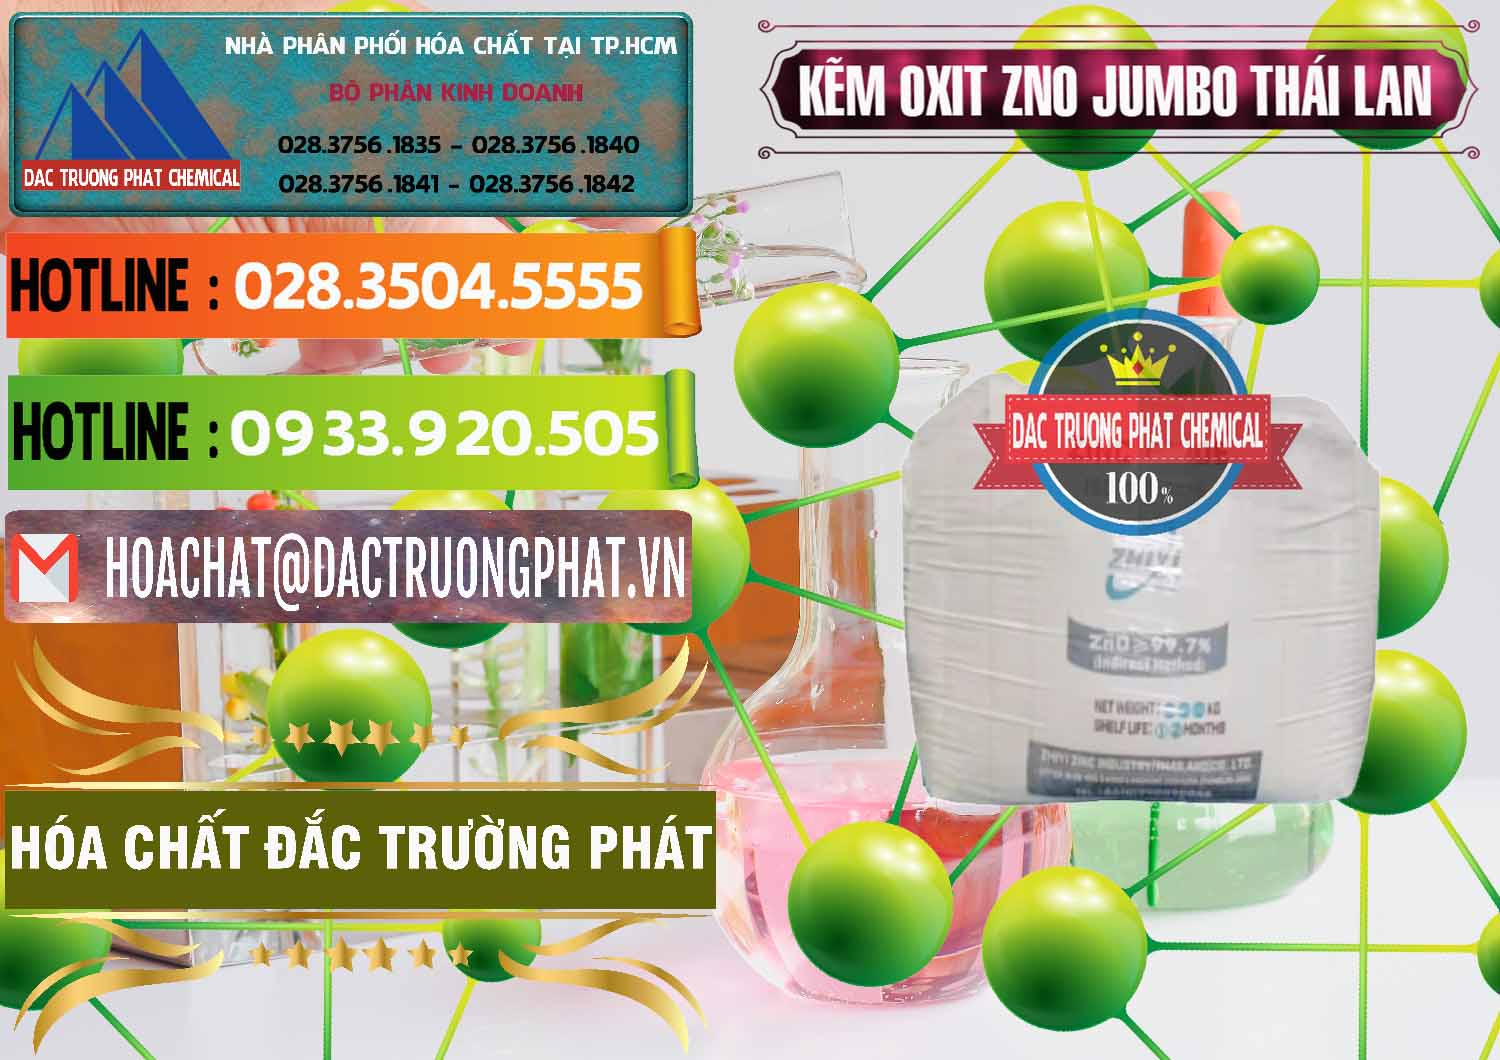 Cty chuyên phân phối & bán Zinc Oxide - Bột Kẽm Oxit ZNO Jumbo Bành Thái Lan Thailand - 0370 - Nơi phân phối & cung cấp hóa chất tại TP.HCM - cungcaphoachat.com.vn